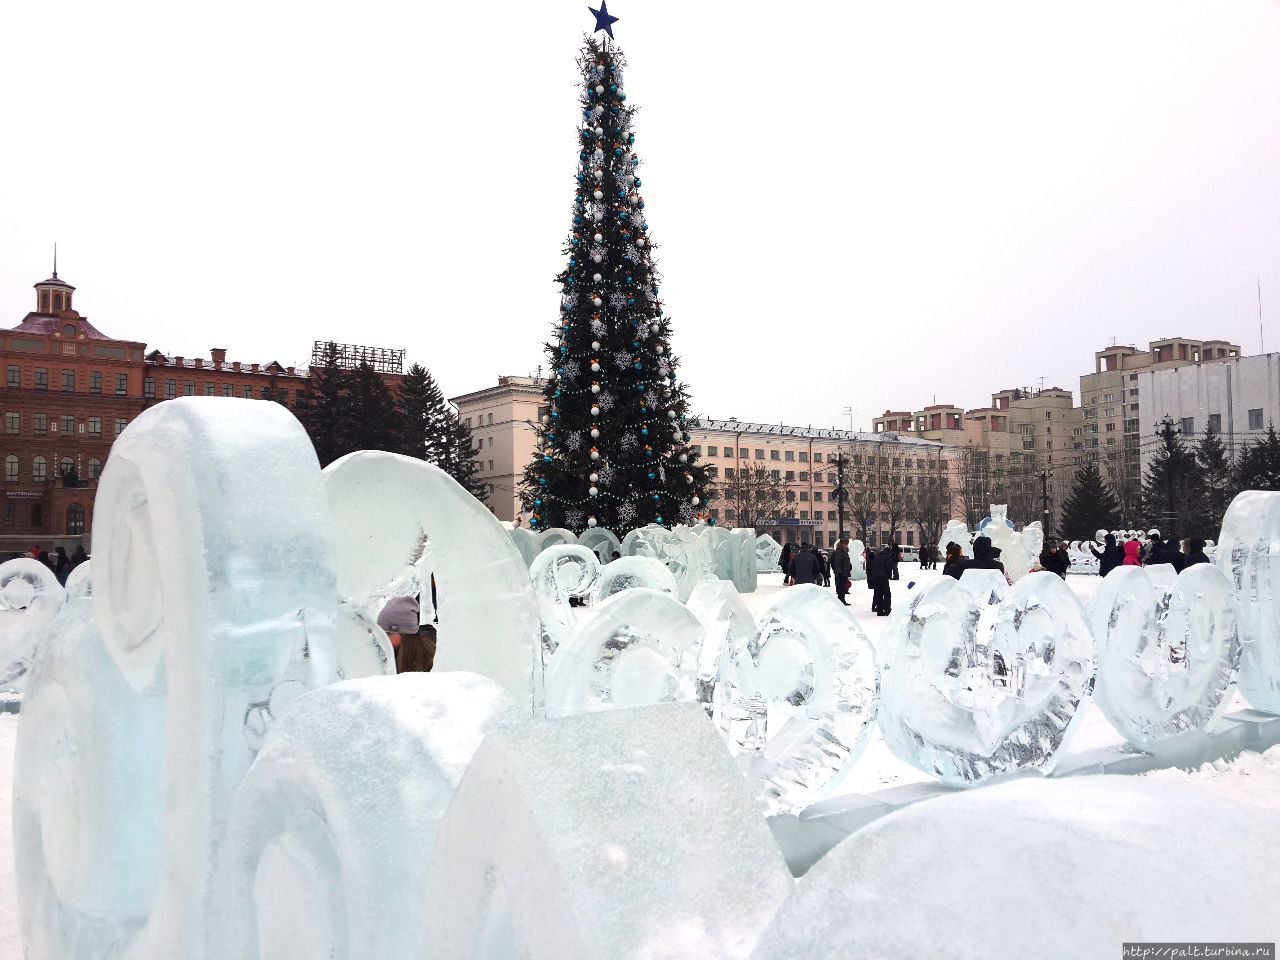 В рейтинге ледяного убранства главная площадь  Хабаровска — площадь Ленина — по мнению хабаровчан занимает последнее место